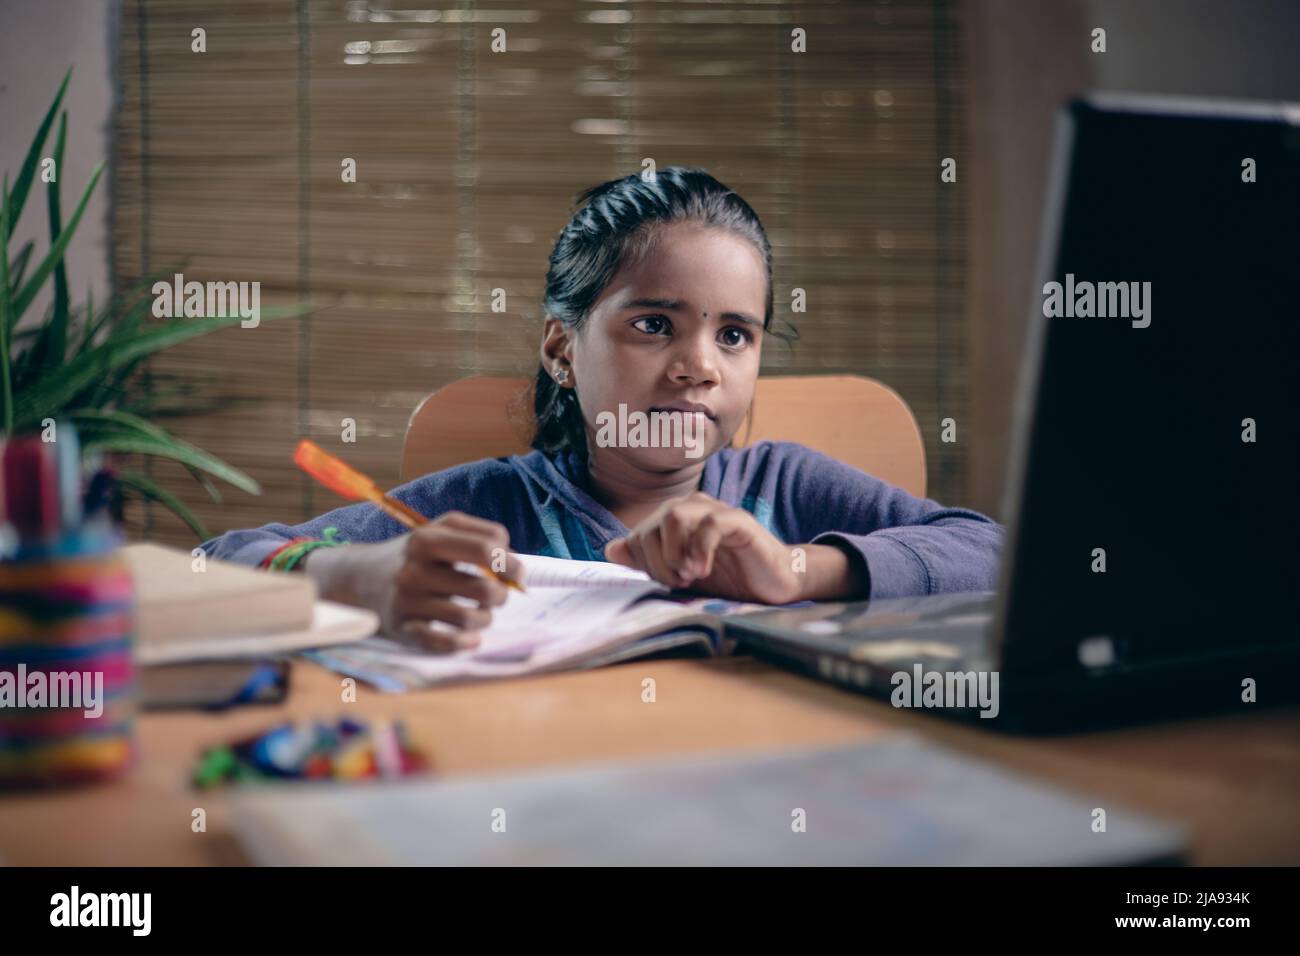 Indian Girl Estudiando clase en línea - covid 19. Niña asiática de 10-12 años. Foto de stock